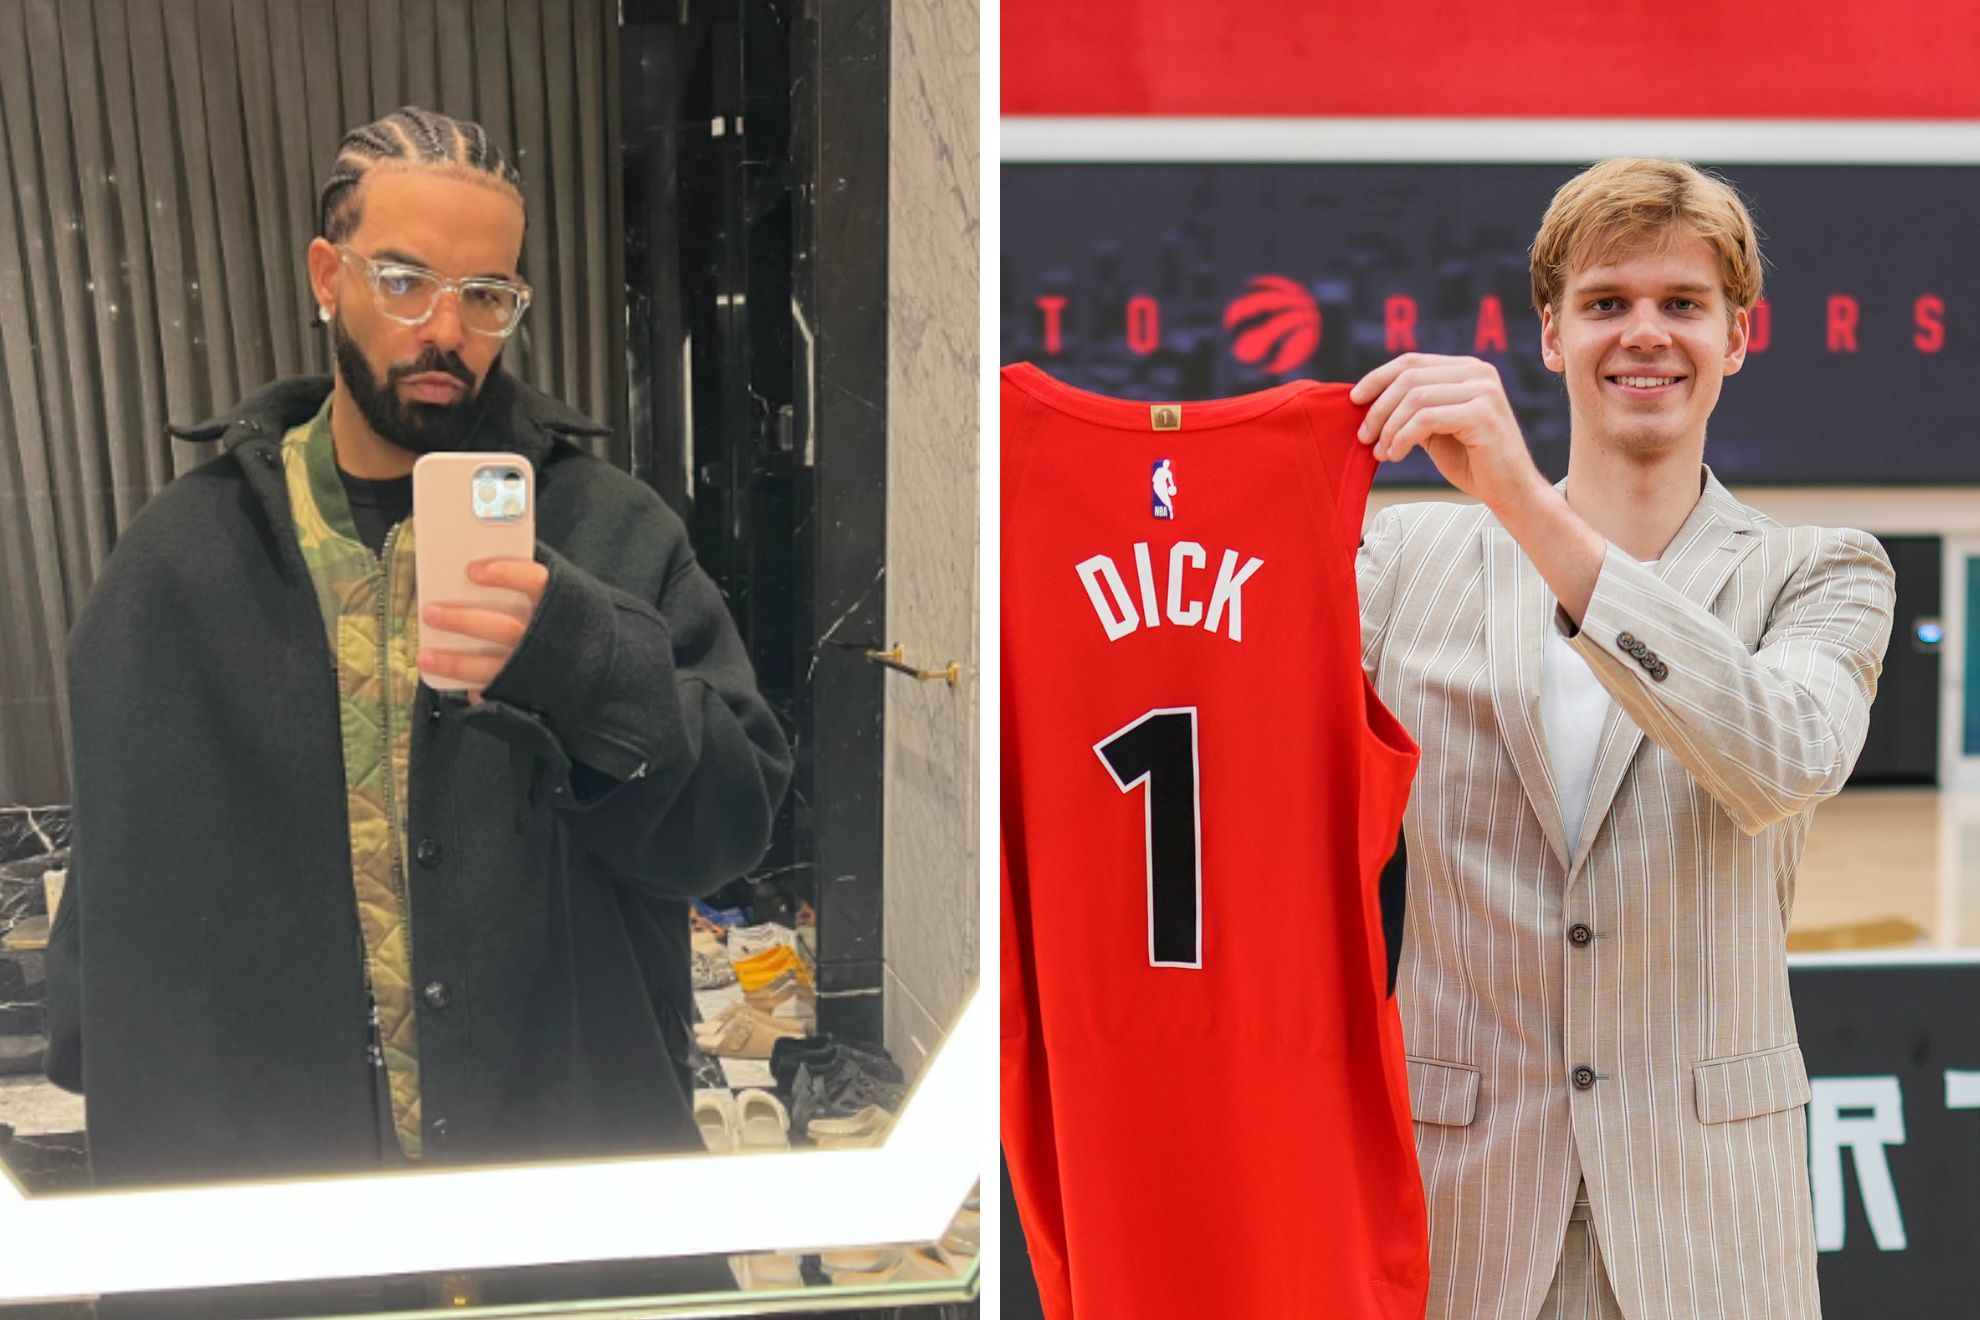 Drake pokes fun at Raptors rookie Gradey Dick's name with viral meme